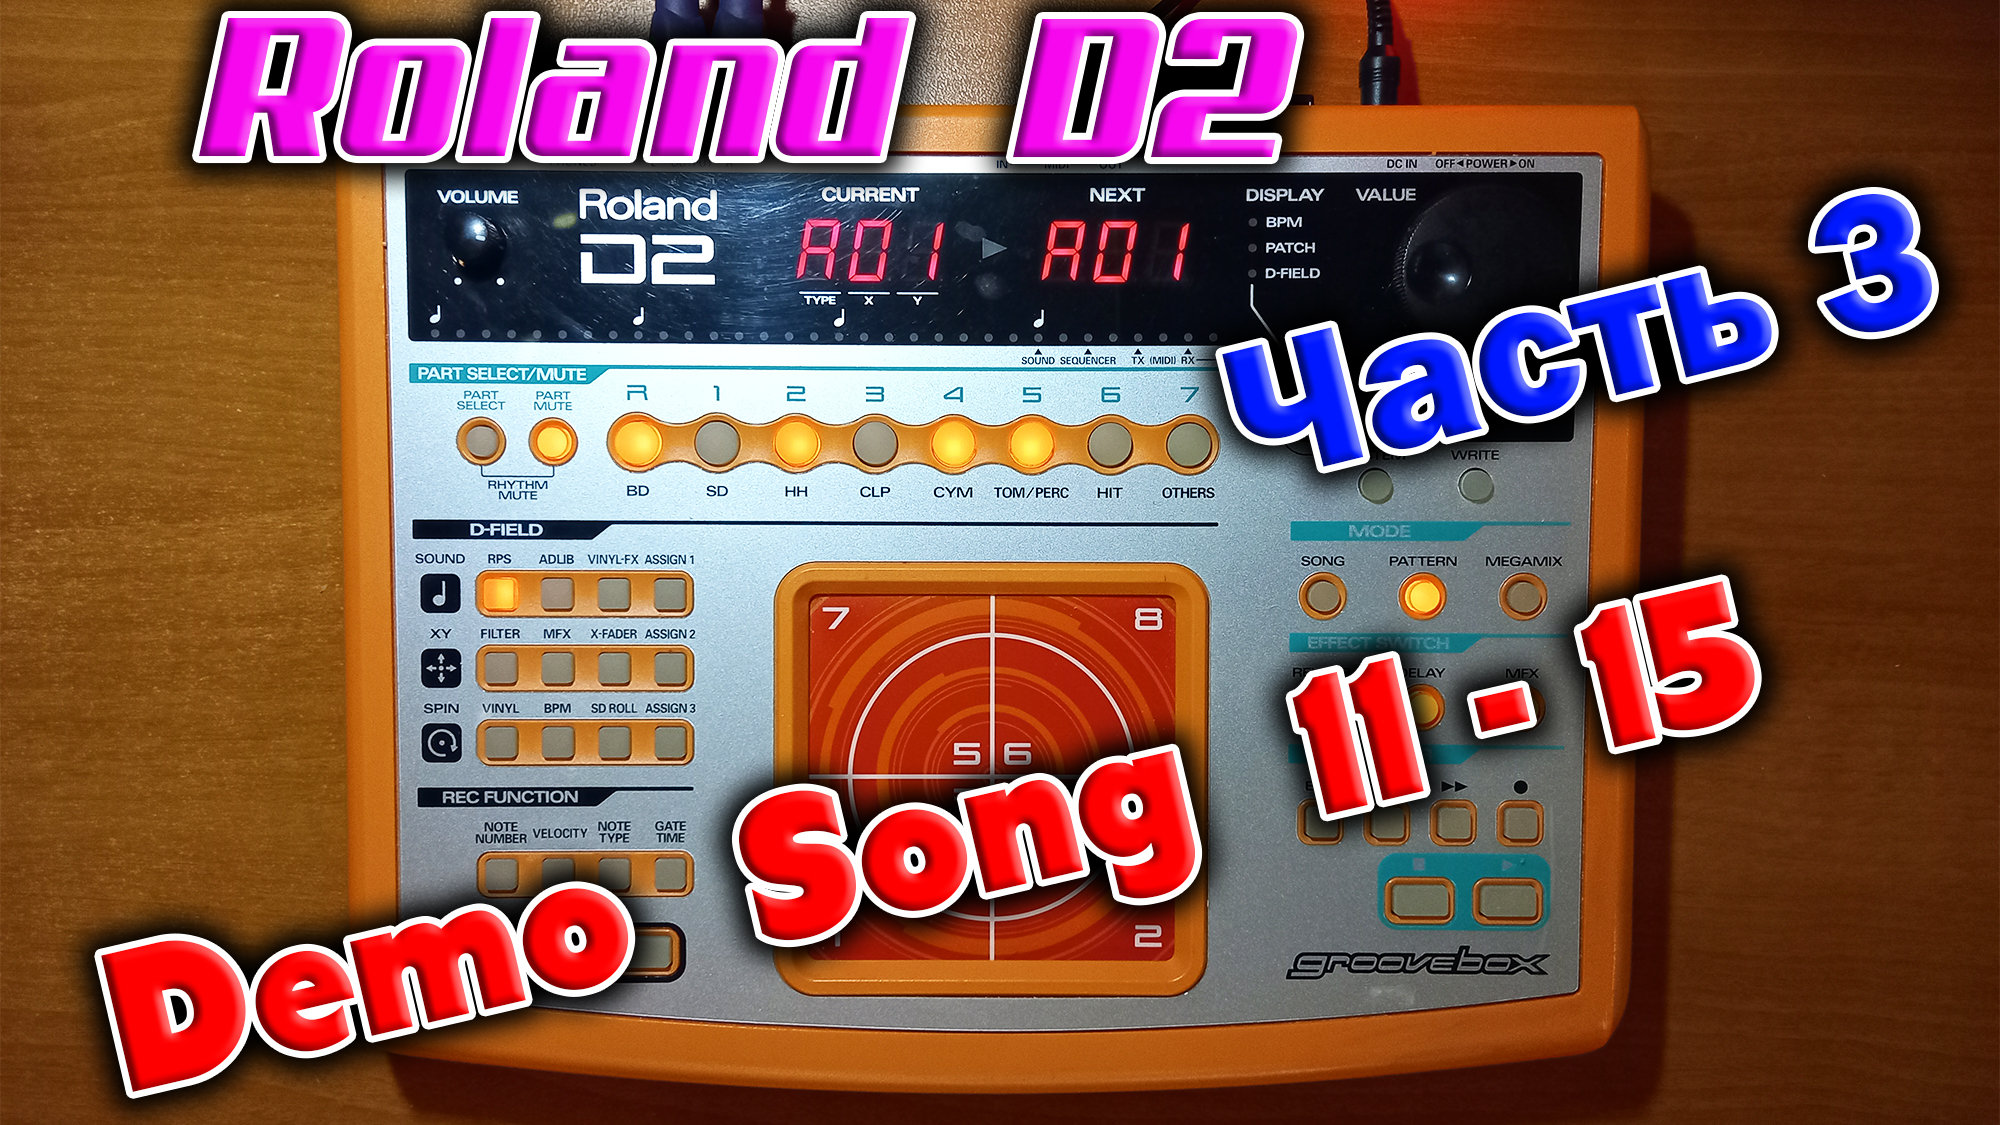 Грувбокс из далёкого 2001 года - Roland D2 !  Слушаем последние Demo songs  11 - 15.